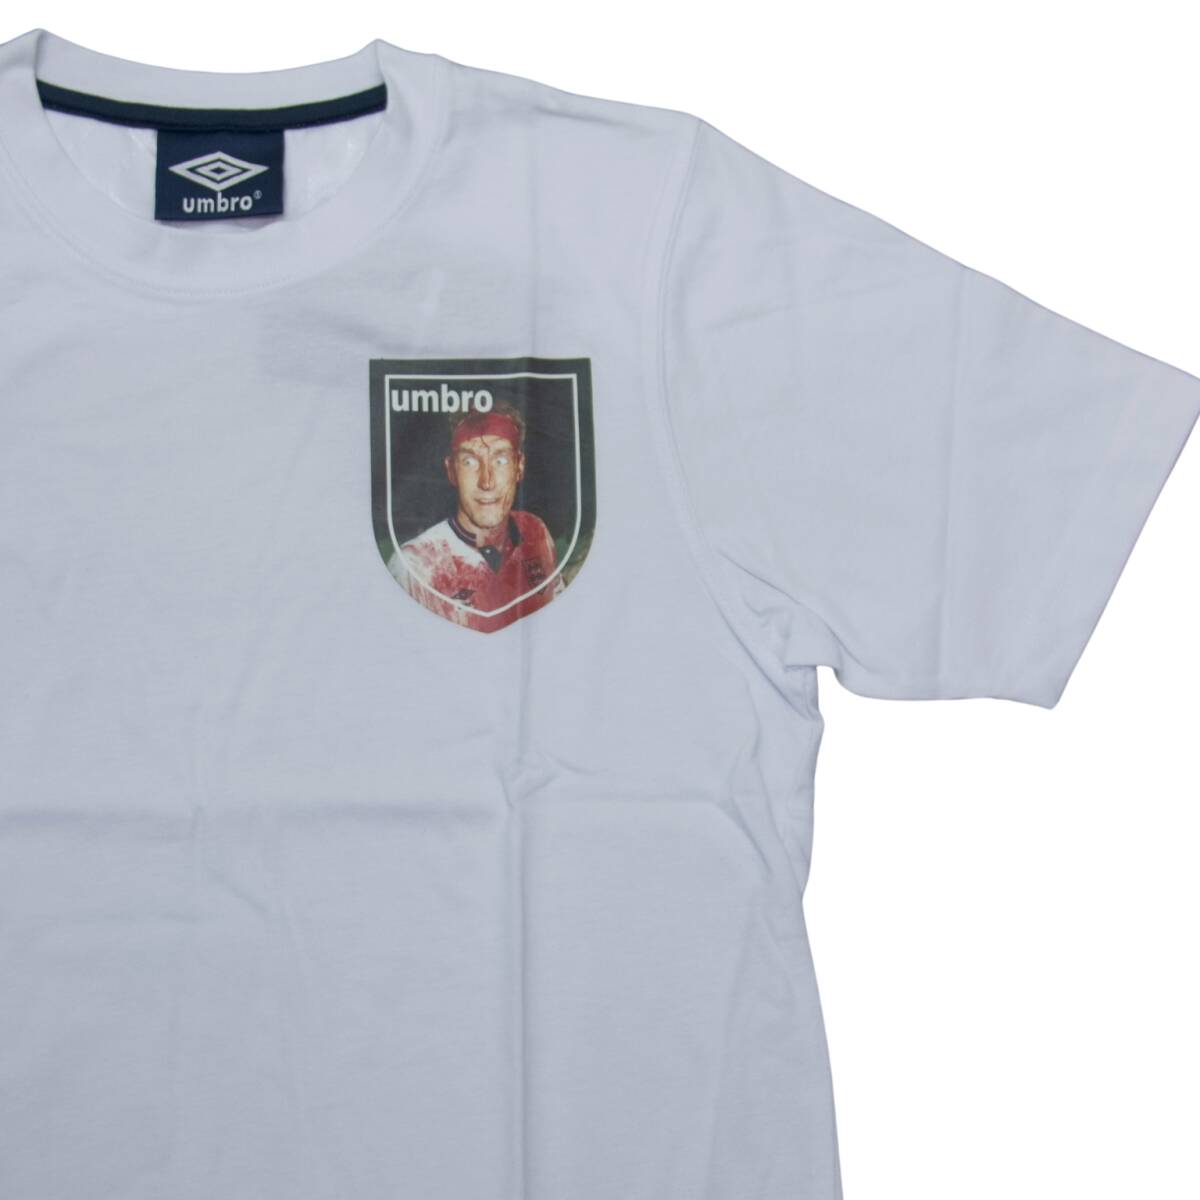 即決☆アンブロ Tシャツ XLサイズ イングランド代表 テリーブッチャー 送料無料 貴重 アンブロモデル 国内正規品